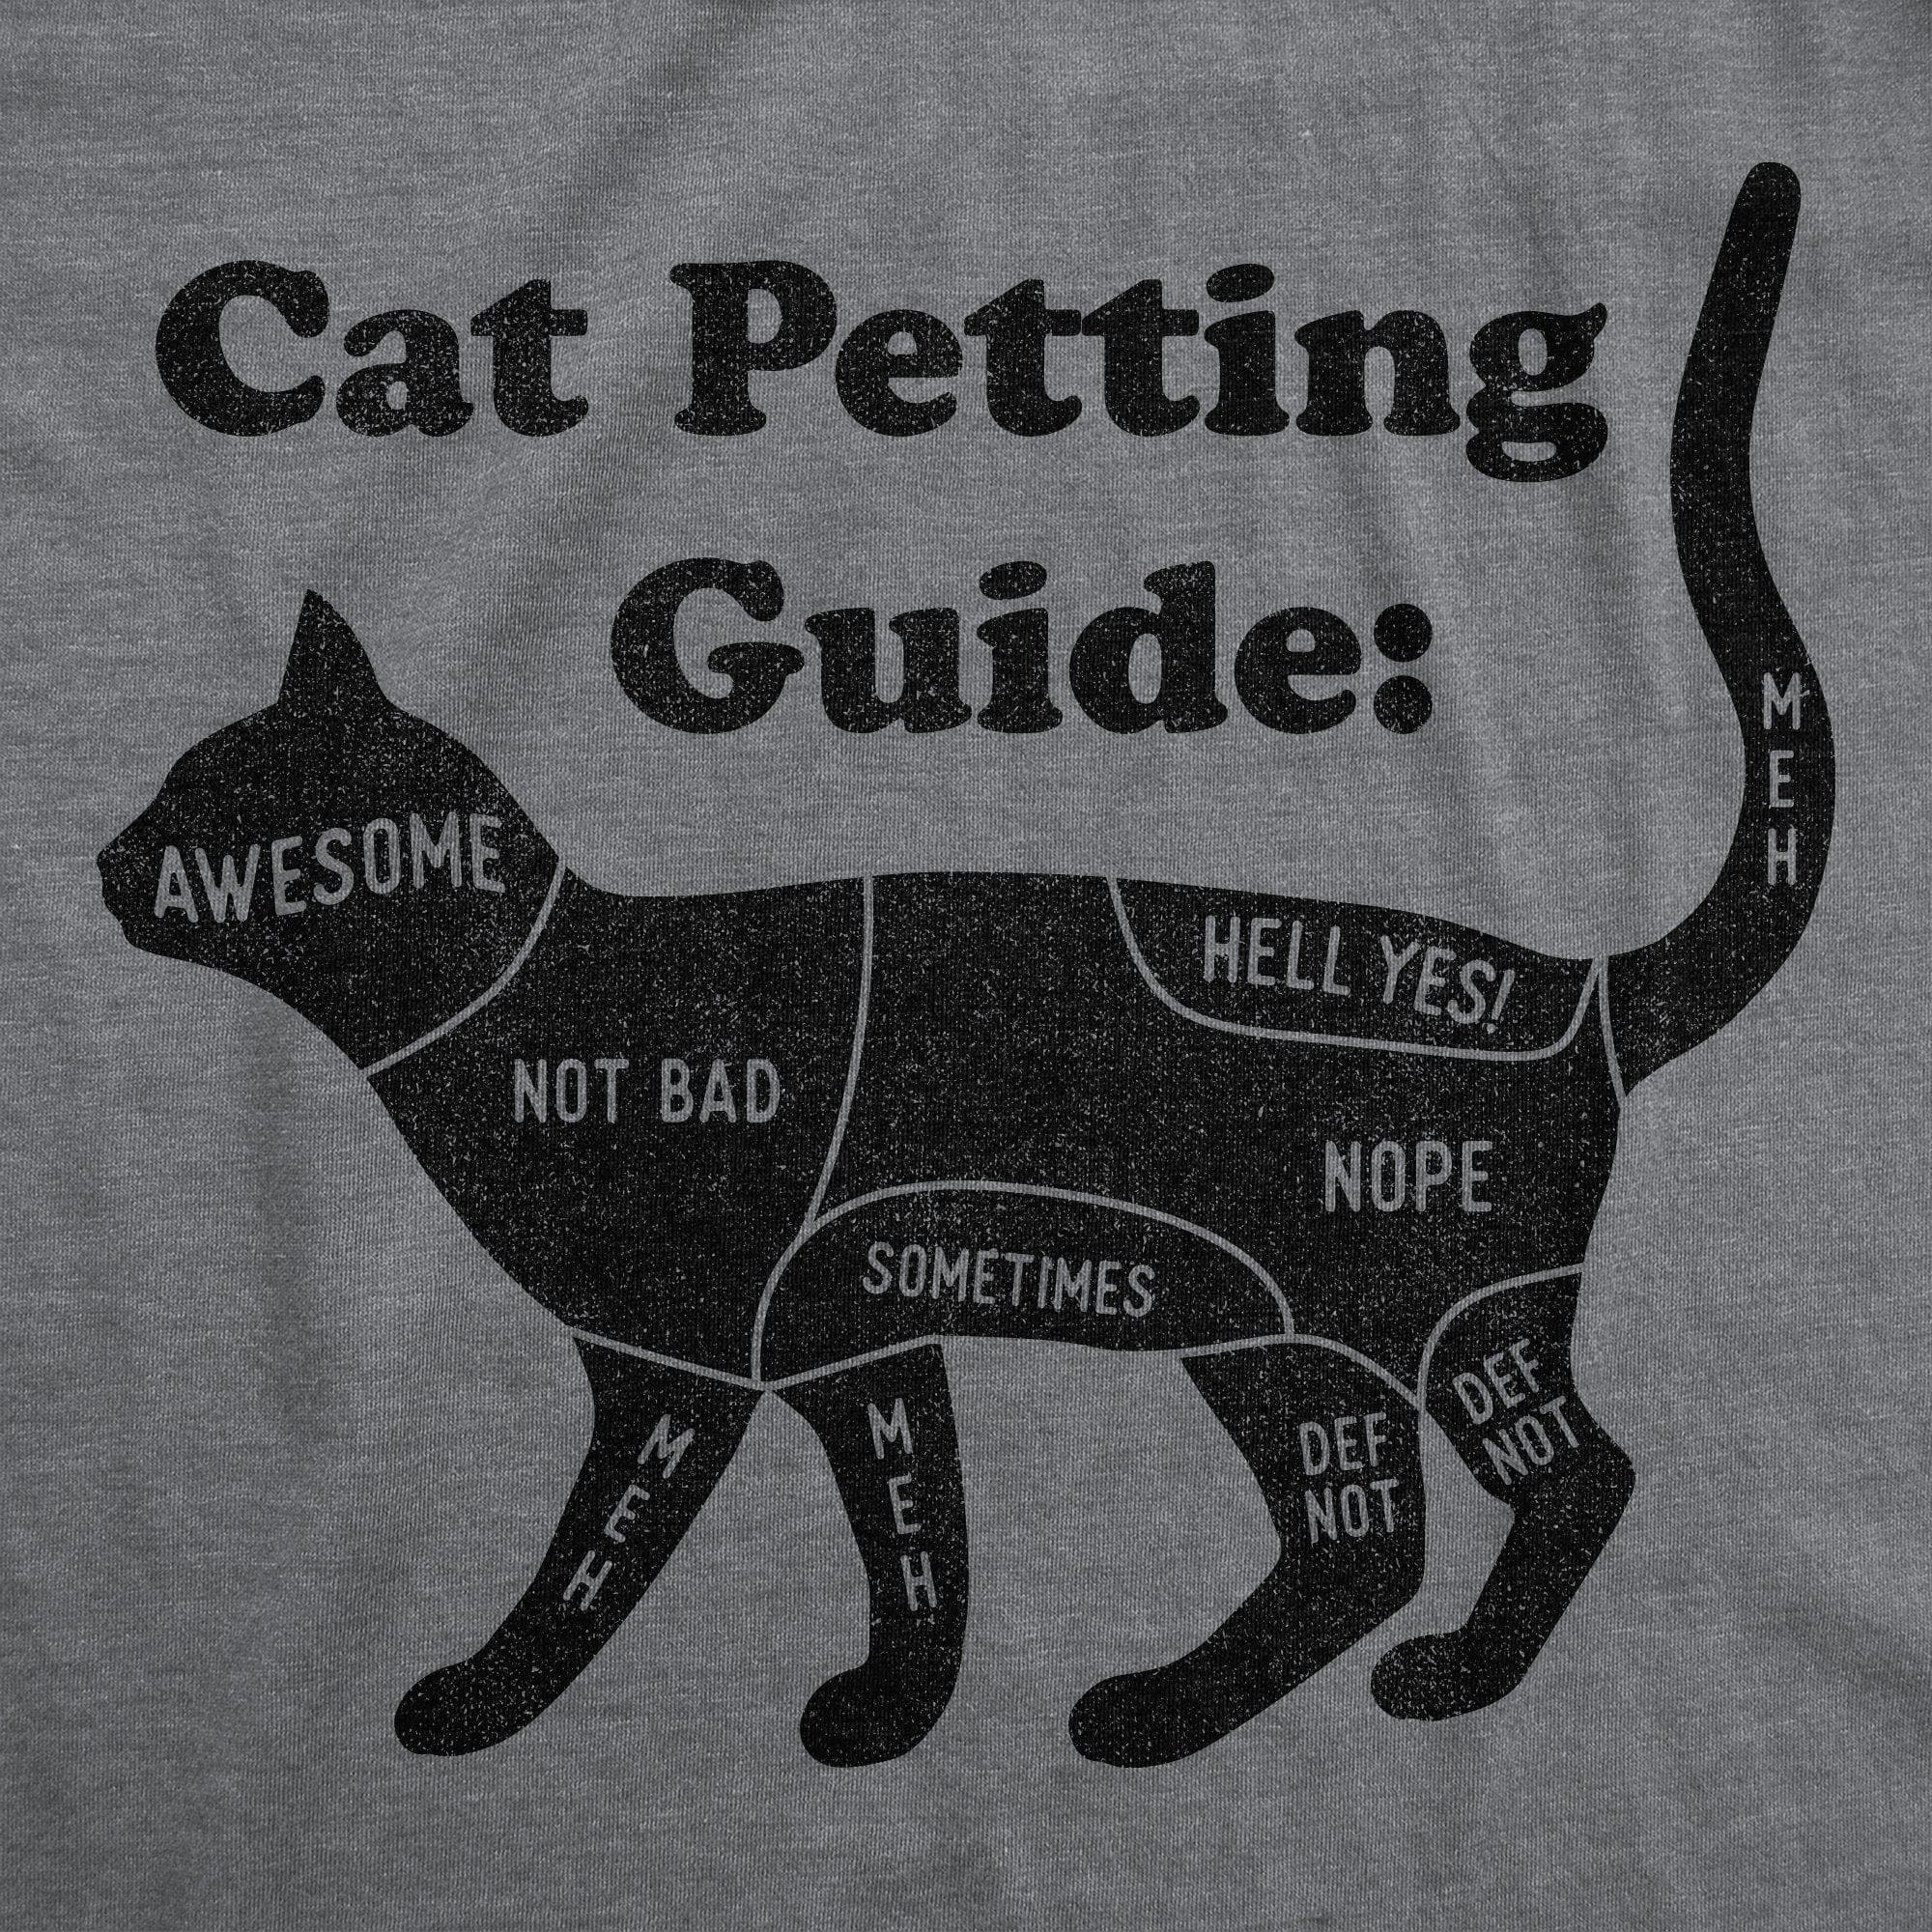 Cat Petting Guide Women's Tshirt - Crazy Dog T-Shirts